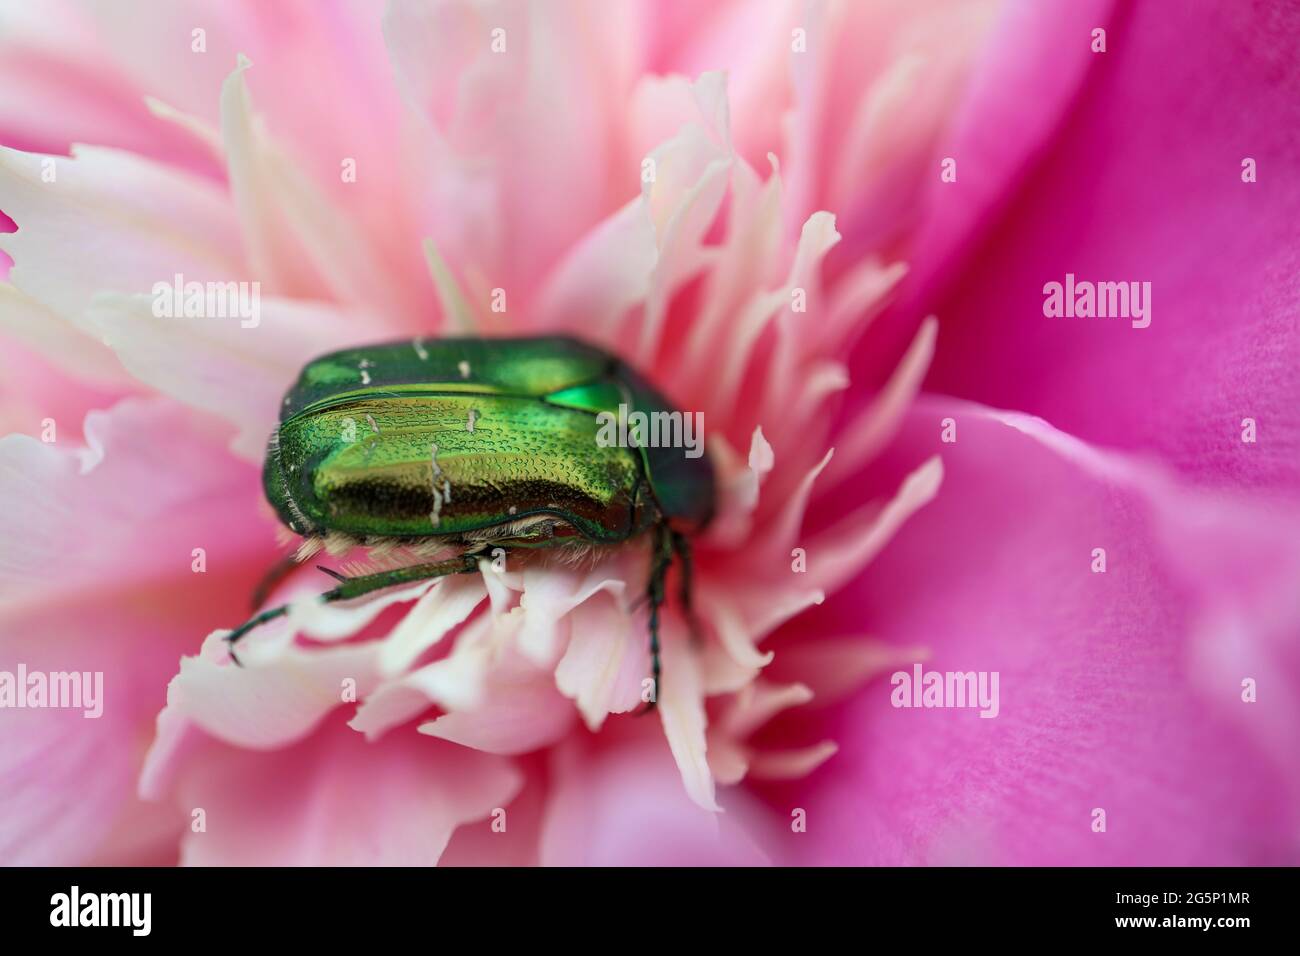 Scarabeo verde Cetonia Aurata su pony rosa in giardino , macro scarabeo verde, insetto su fiore, fauna, insetto faunistico, bellezza nella natura, foto macro Foto Stock